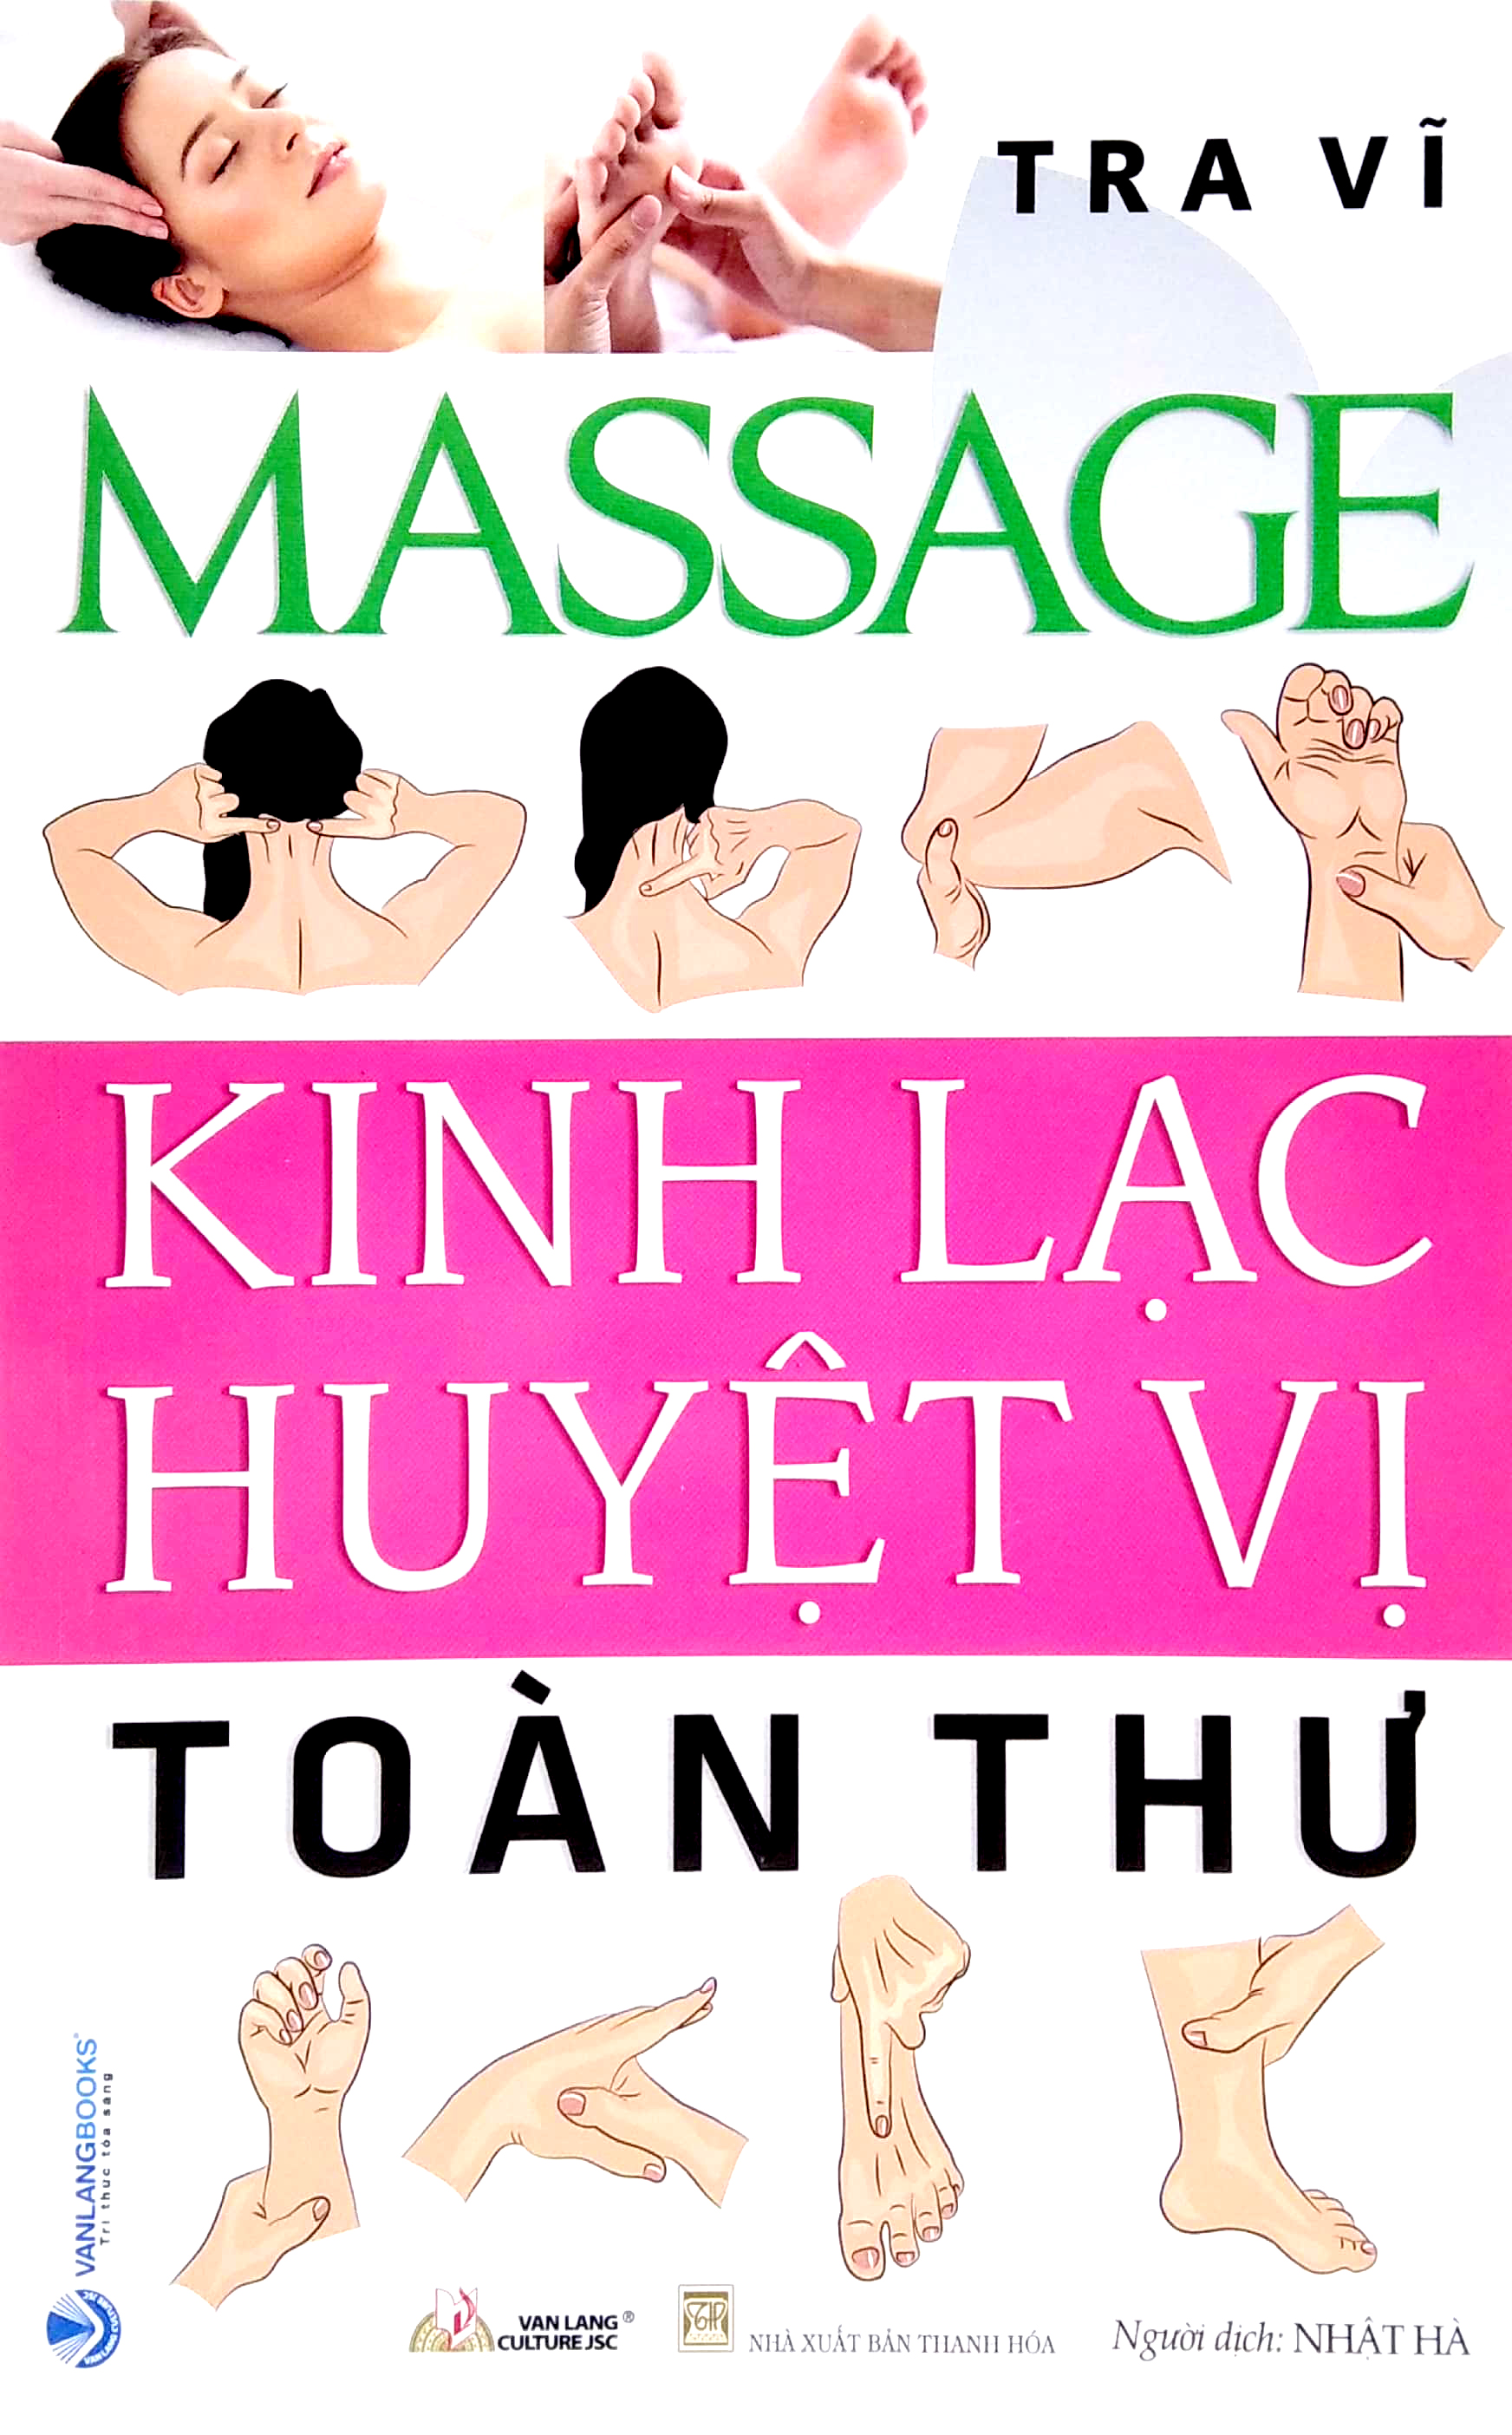 Massage - Kinh Lạc Huyệt Vị Toàn Thư PDF